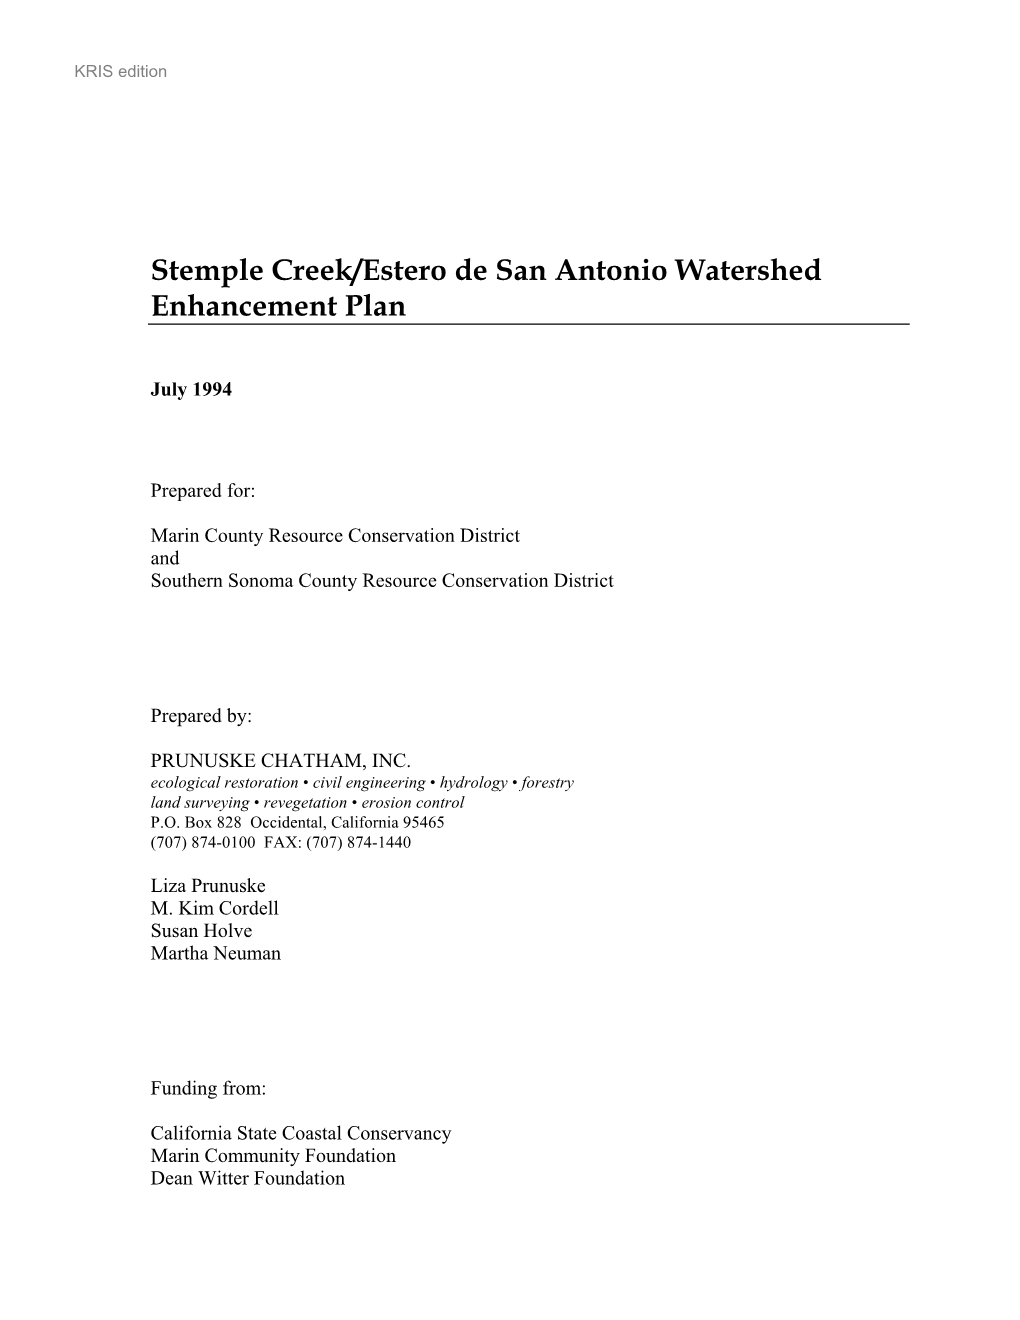 Stemple Creek/Estero De San Antonio Watershed Enhancement Plan